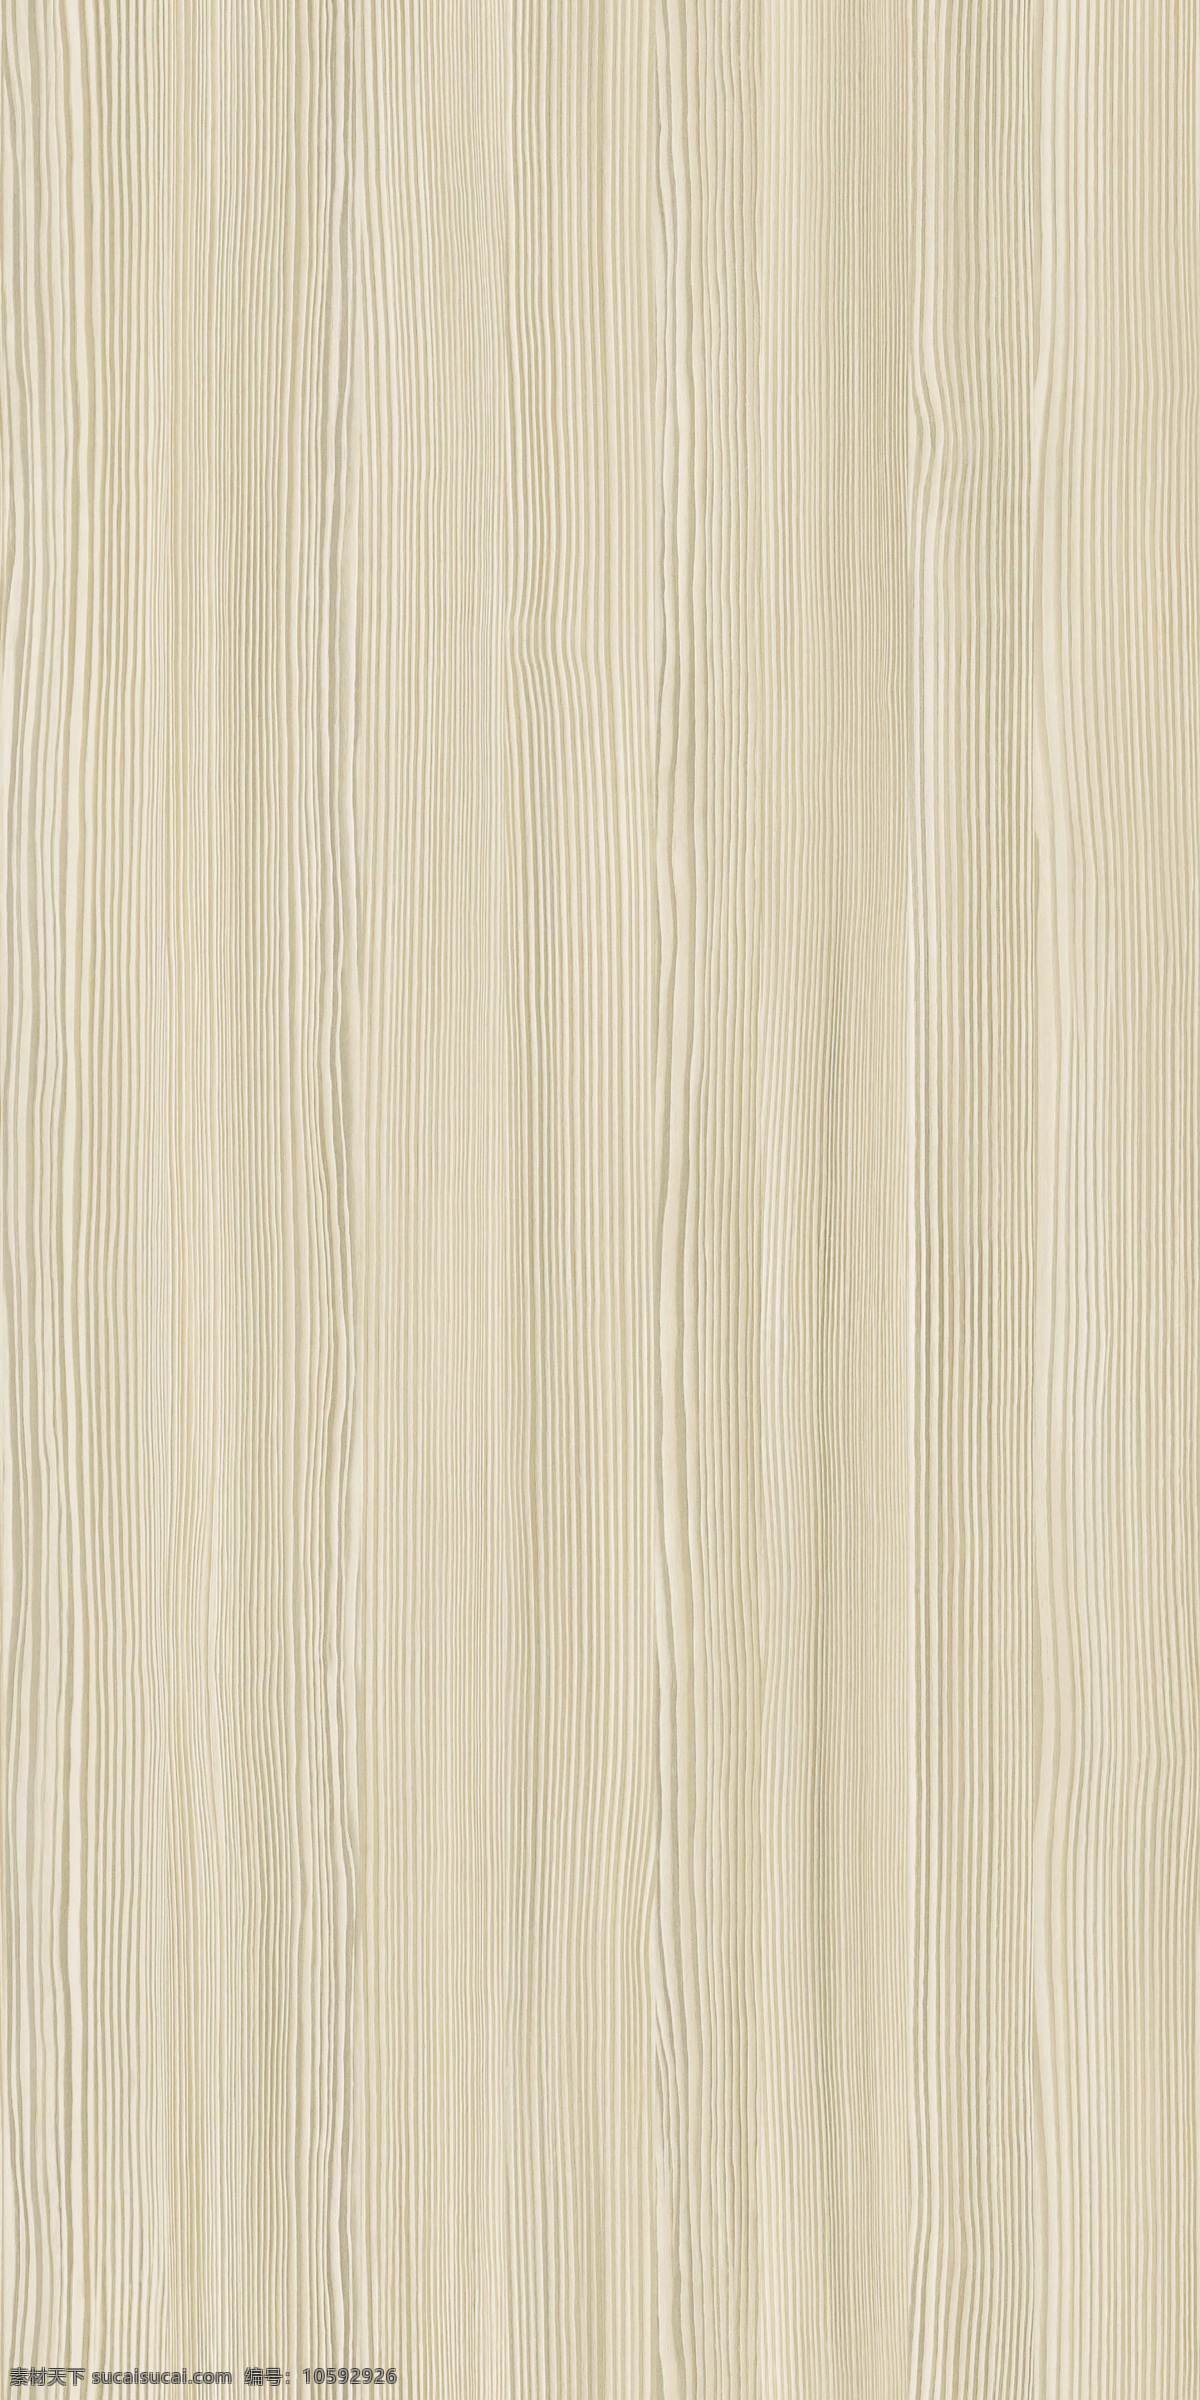 天山雪松 室内设计 家装素材 板材 木材 生态板 雨丝银橡